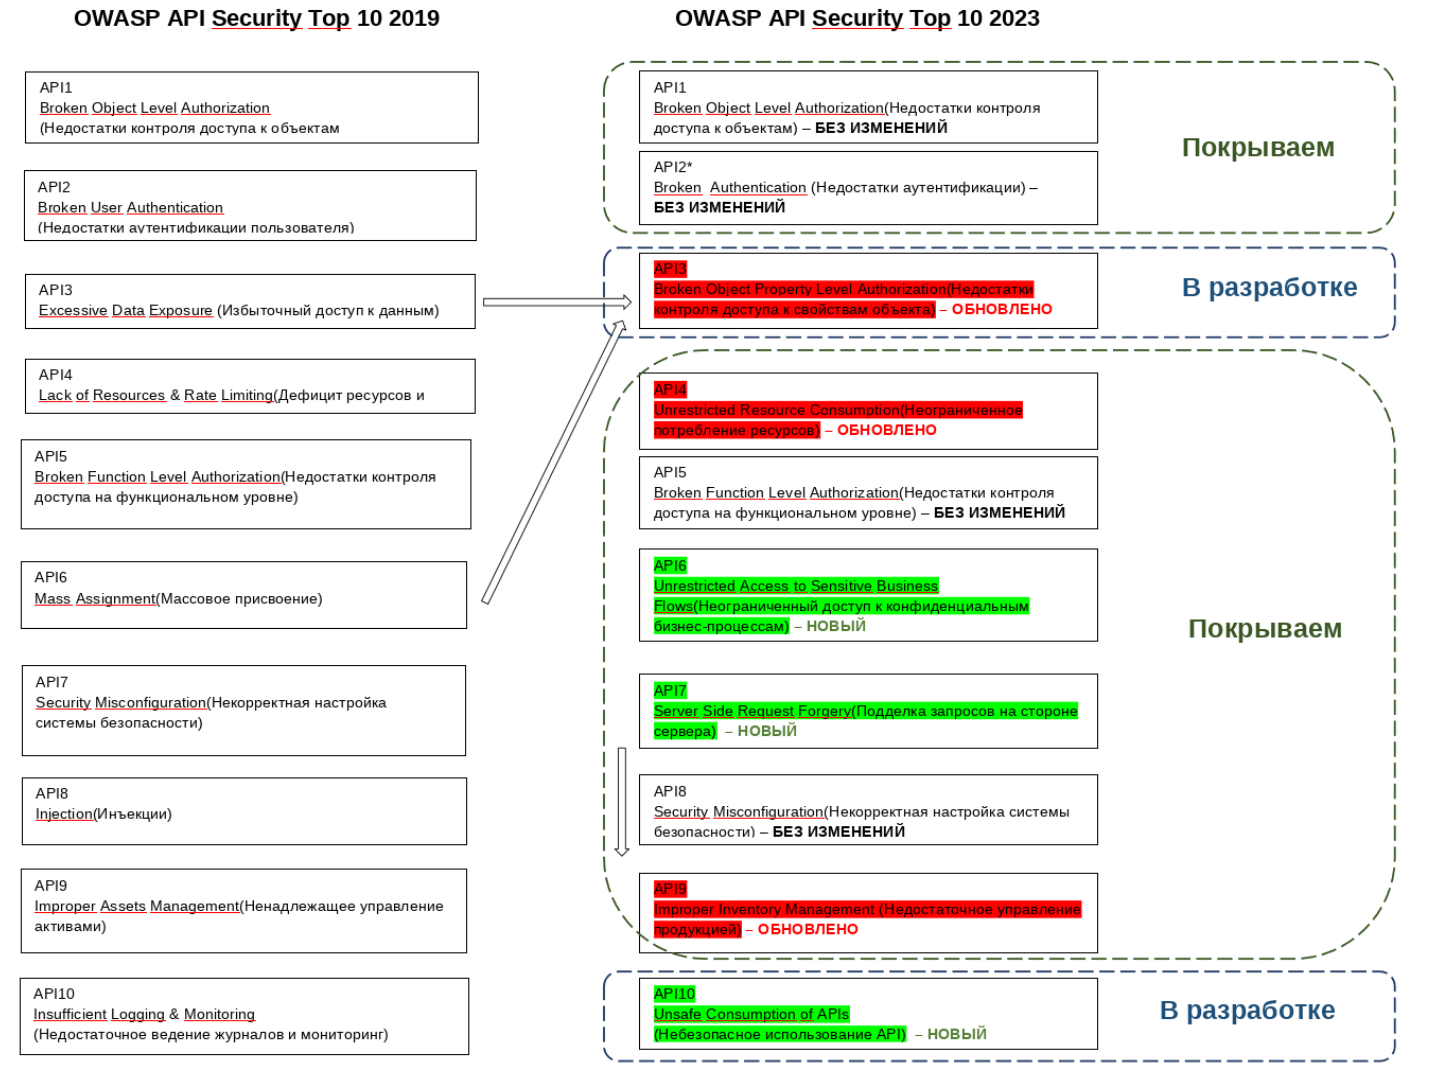 Рис.1 Изменения в перечне рисков от OWASP и их покрытие продуктами от «Вебмониторэкс»